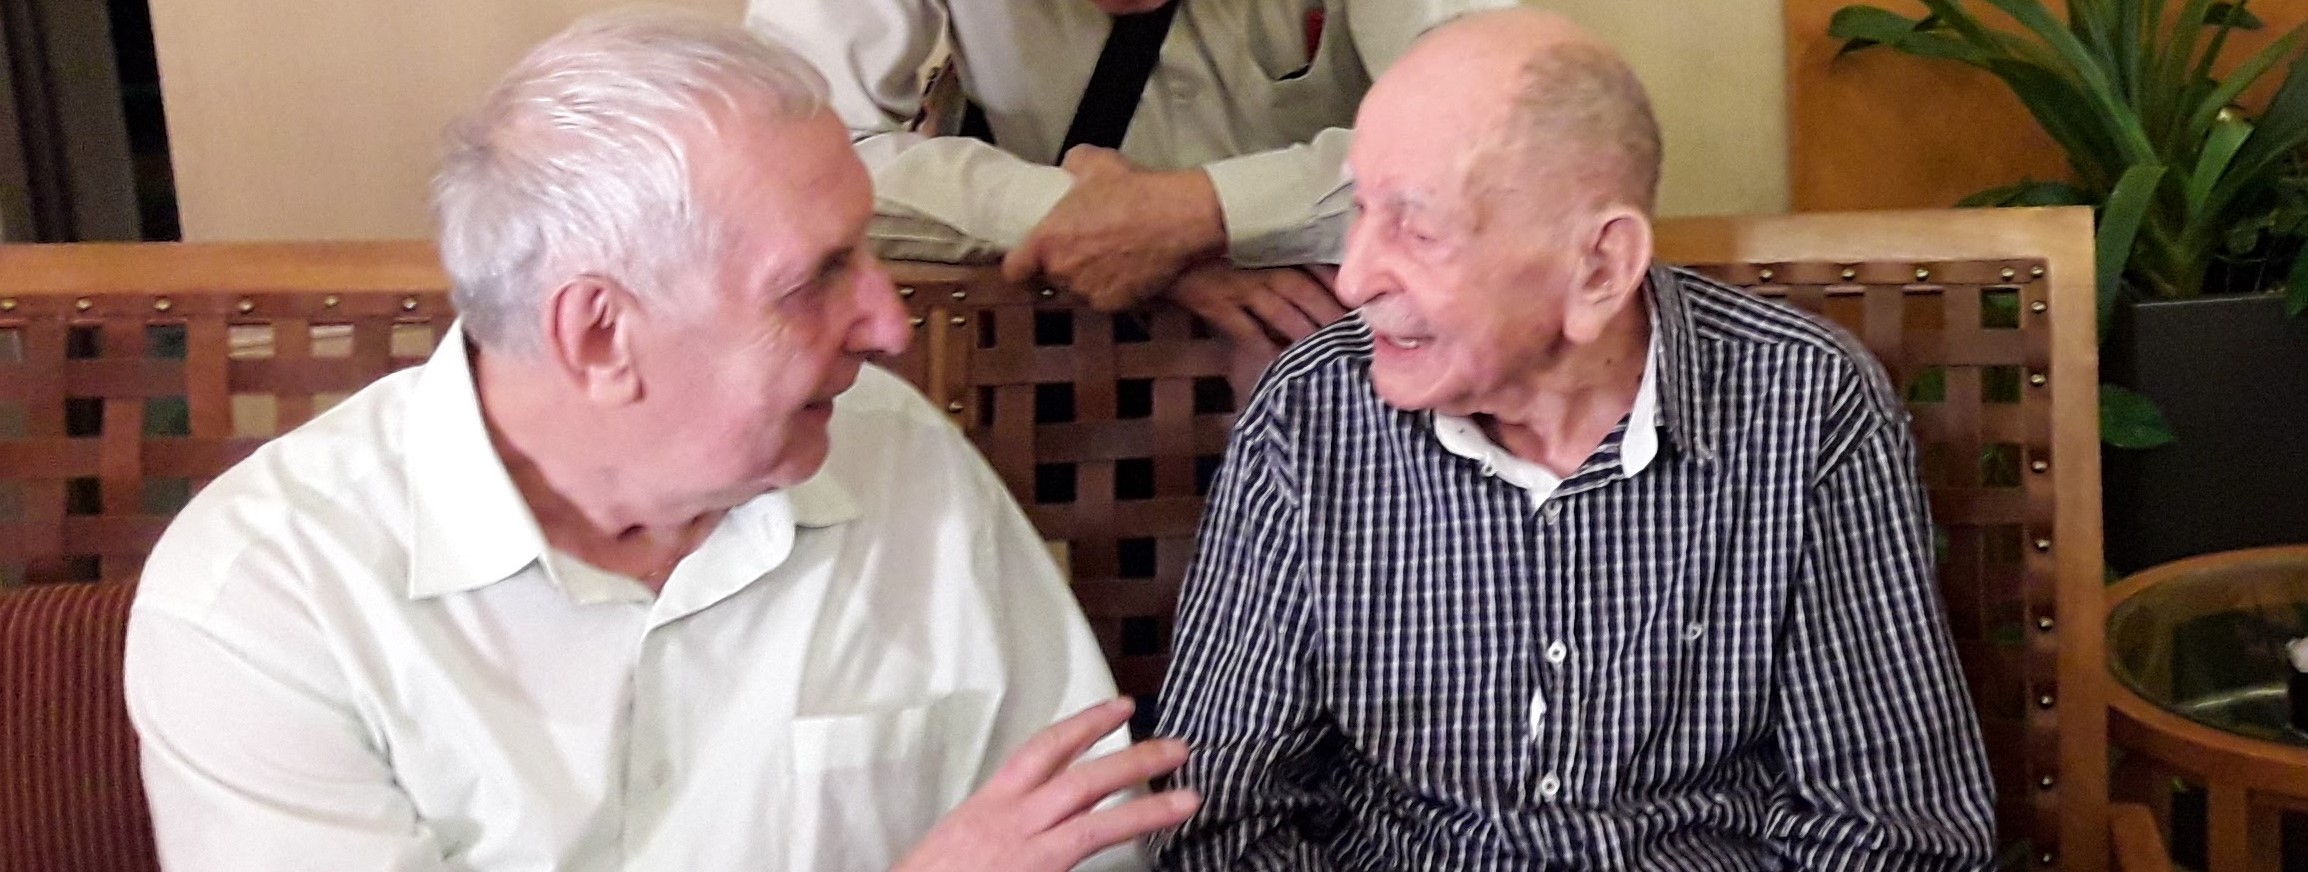 ניצול שואה בן 102 התאחד עם אחיין שלא ידע על קיומו